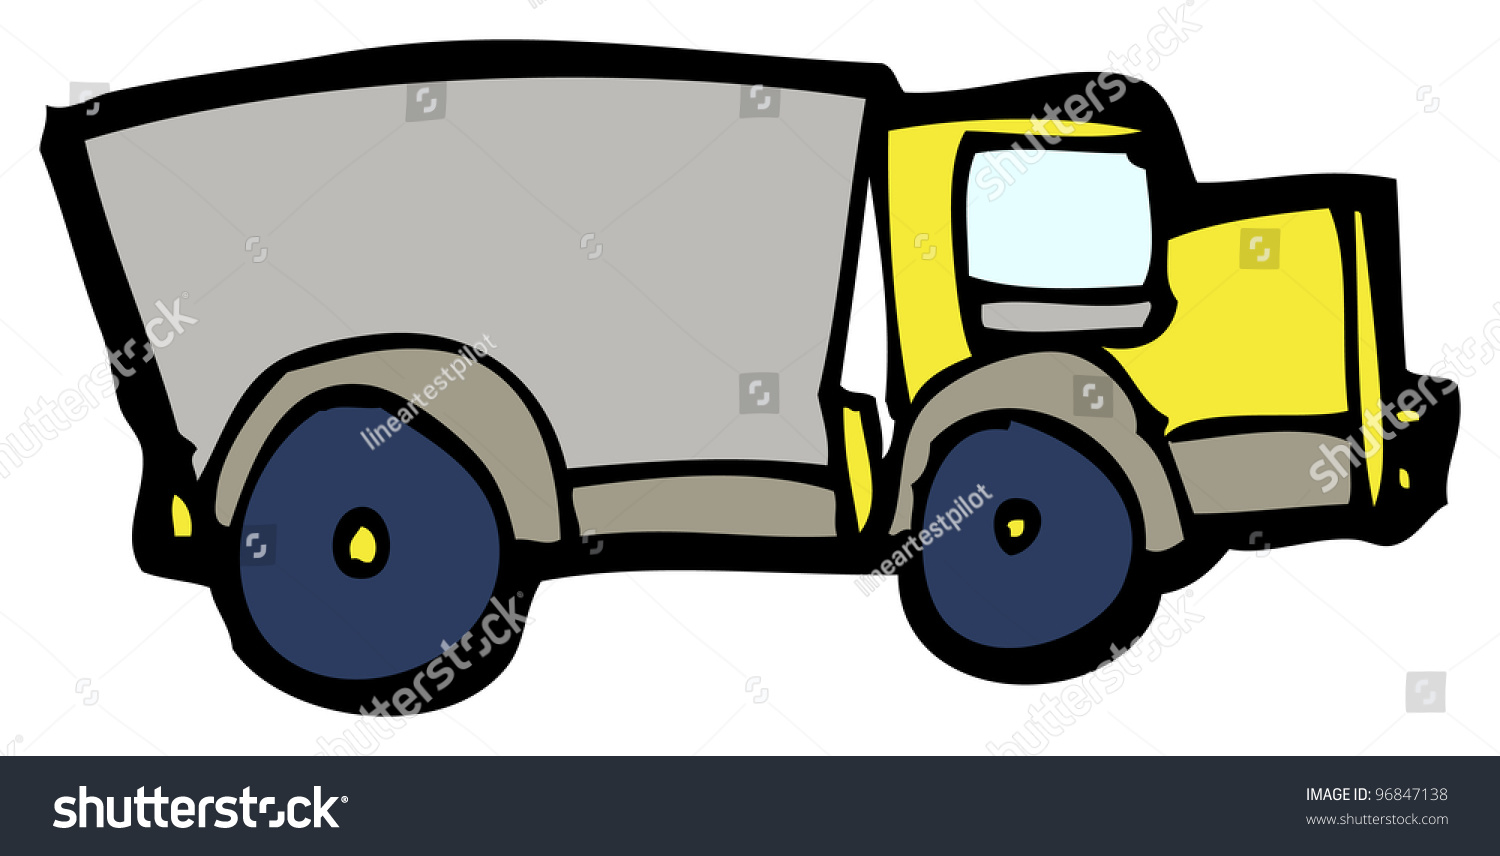 Cartoon Dumper Truck Stock Illustration 96847138 - Shutterstock